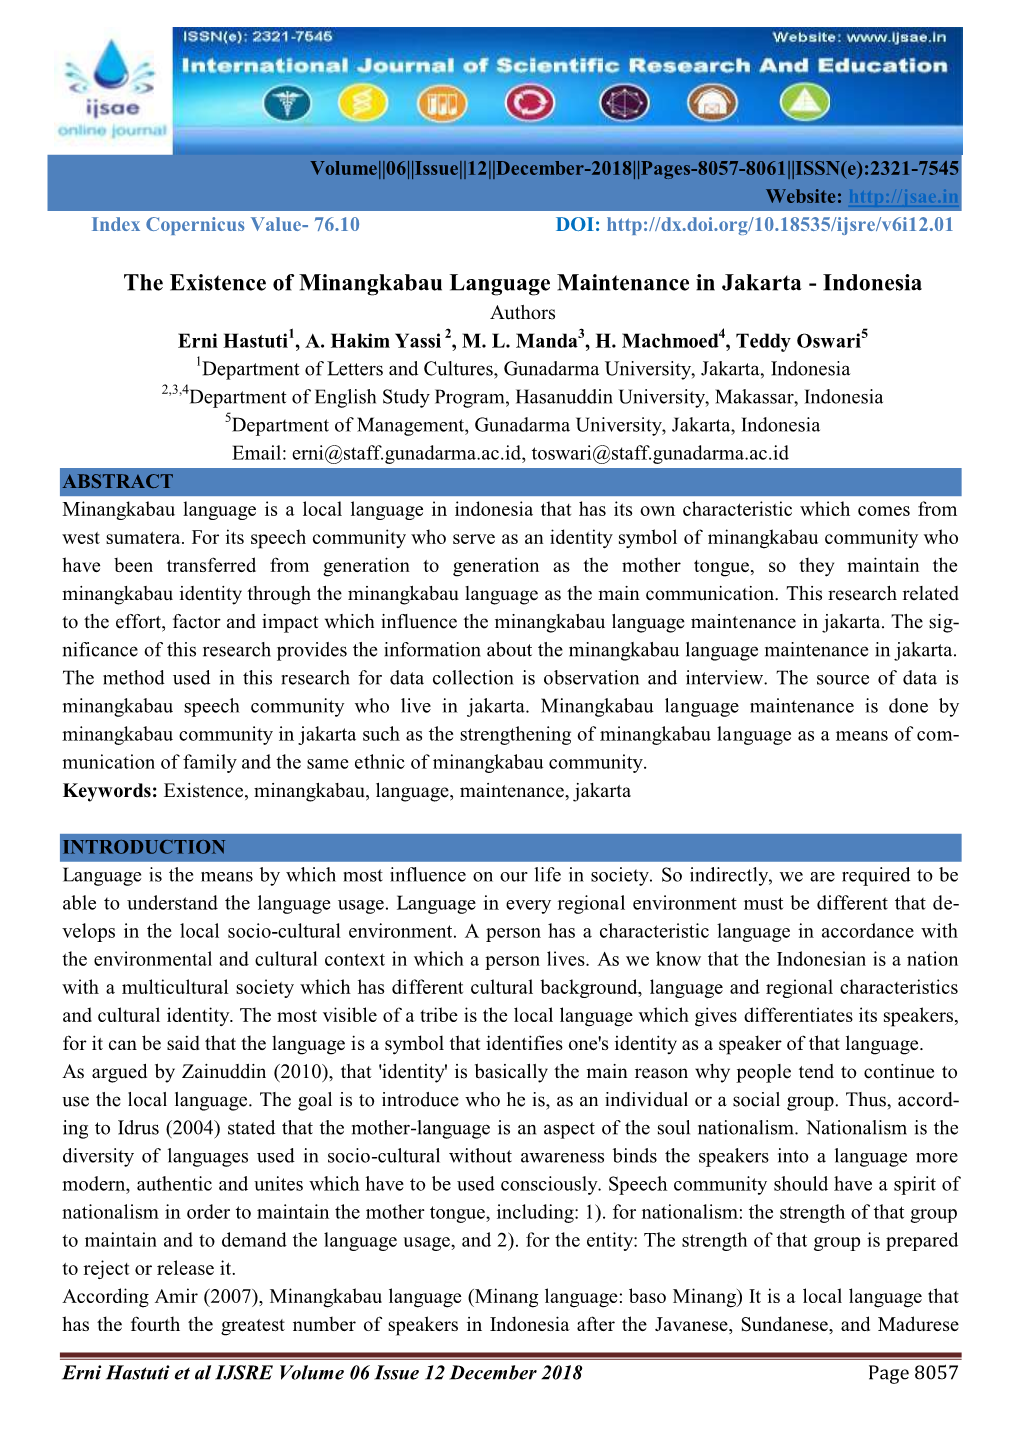 The Existence of Minangkabau Language Maintenance in Jakarta - Indonesia Authors Erni Hastuti1, A